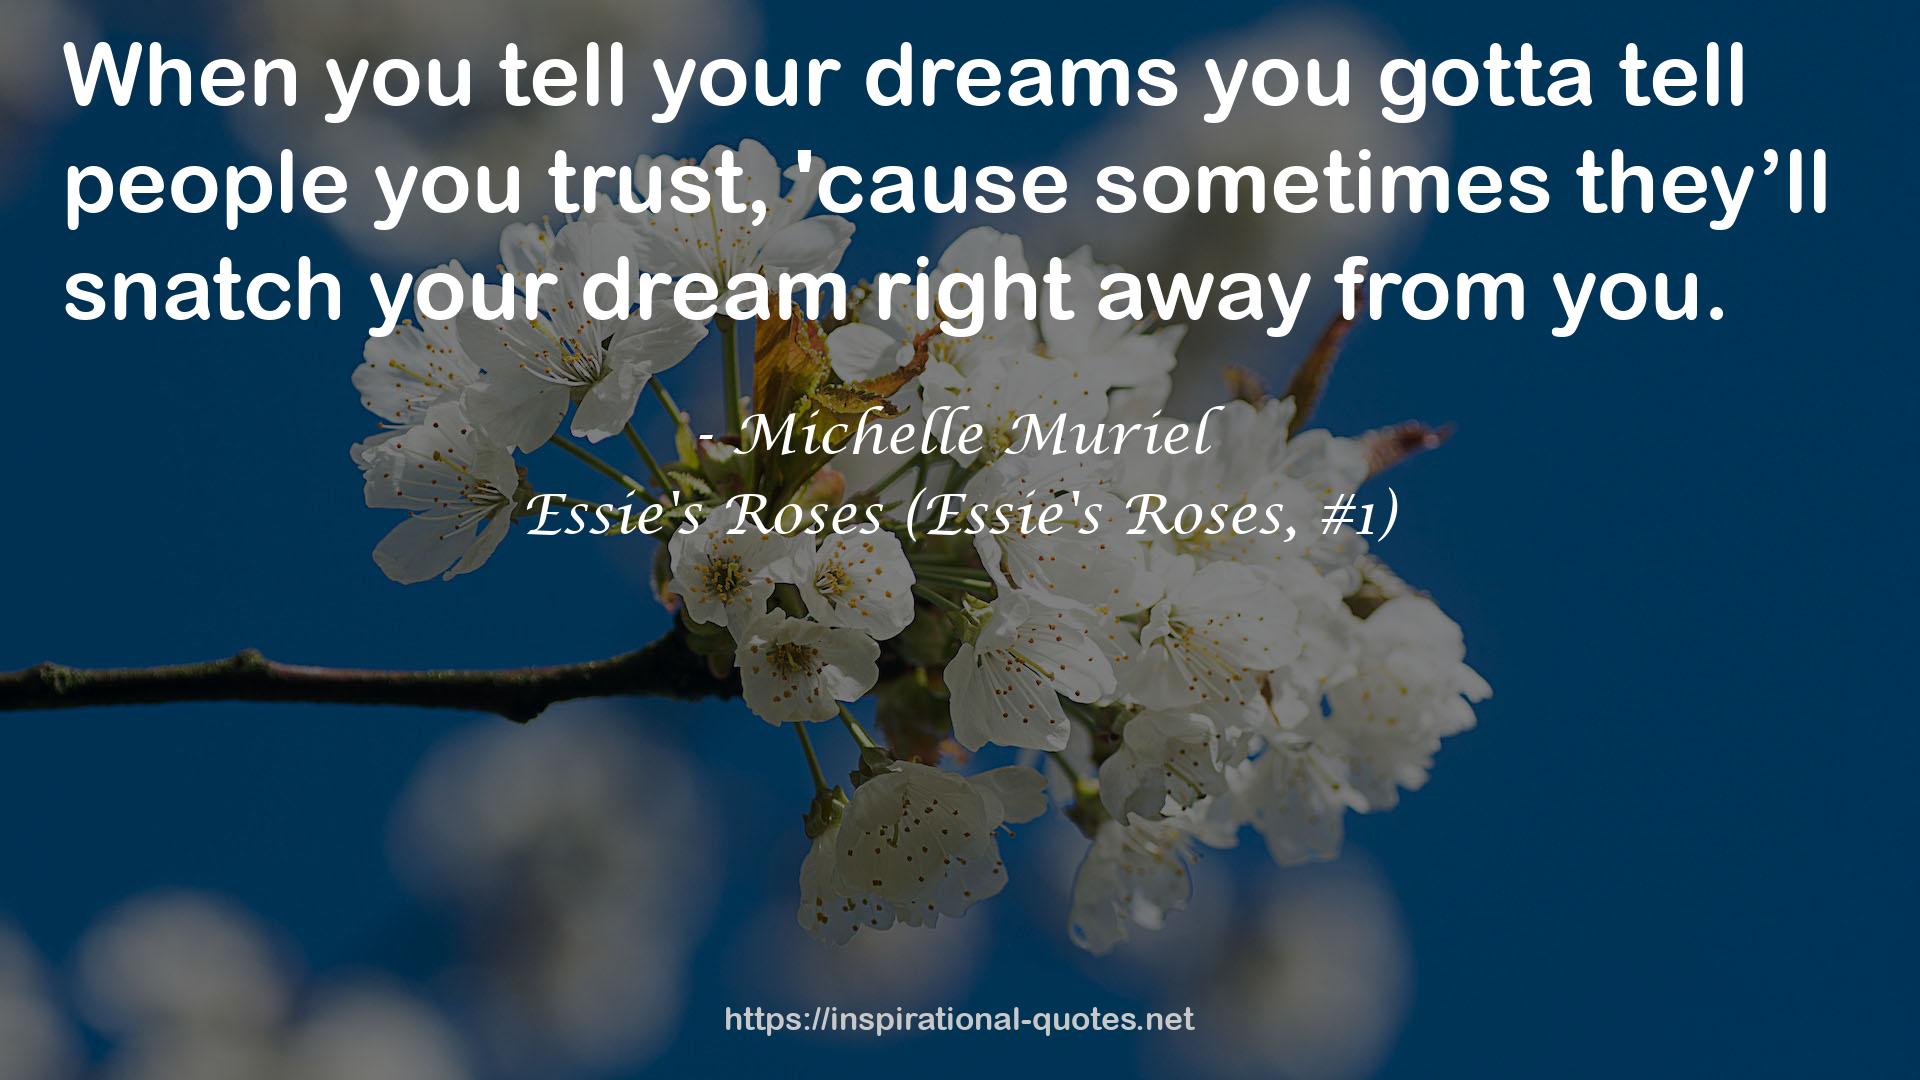 Essie's Roses (Essie's Roses, #1) QUOTES